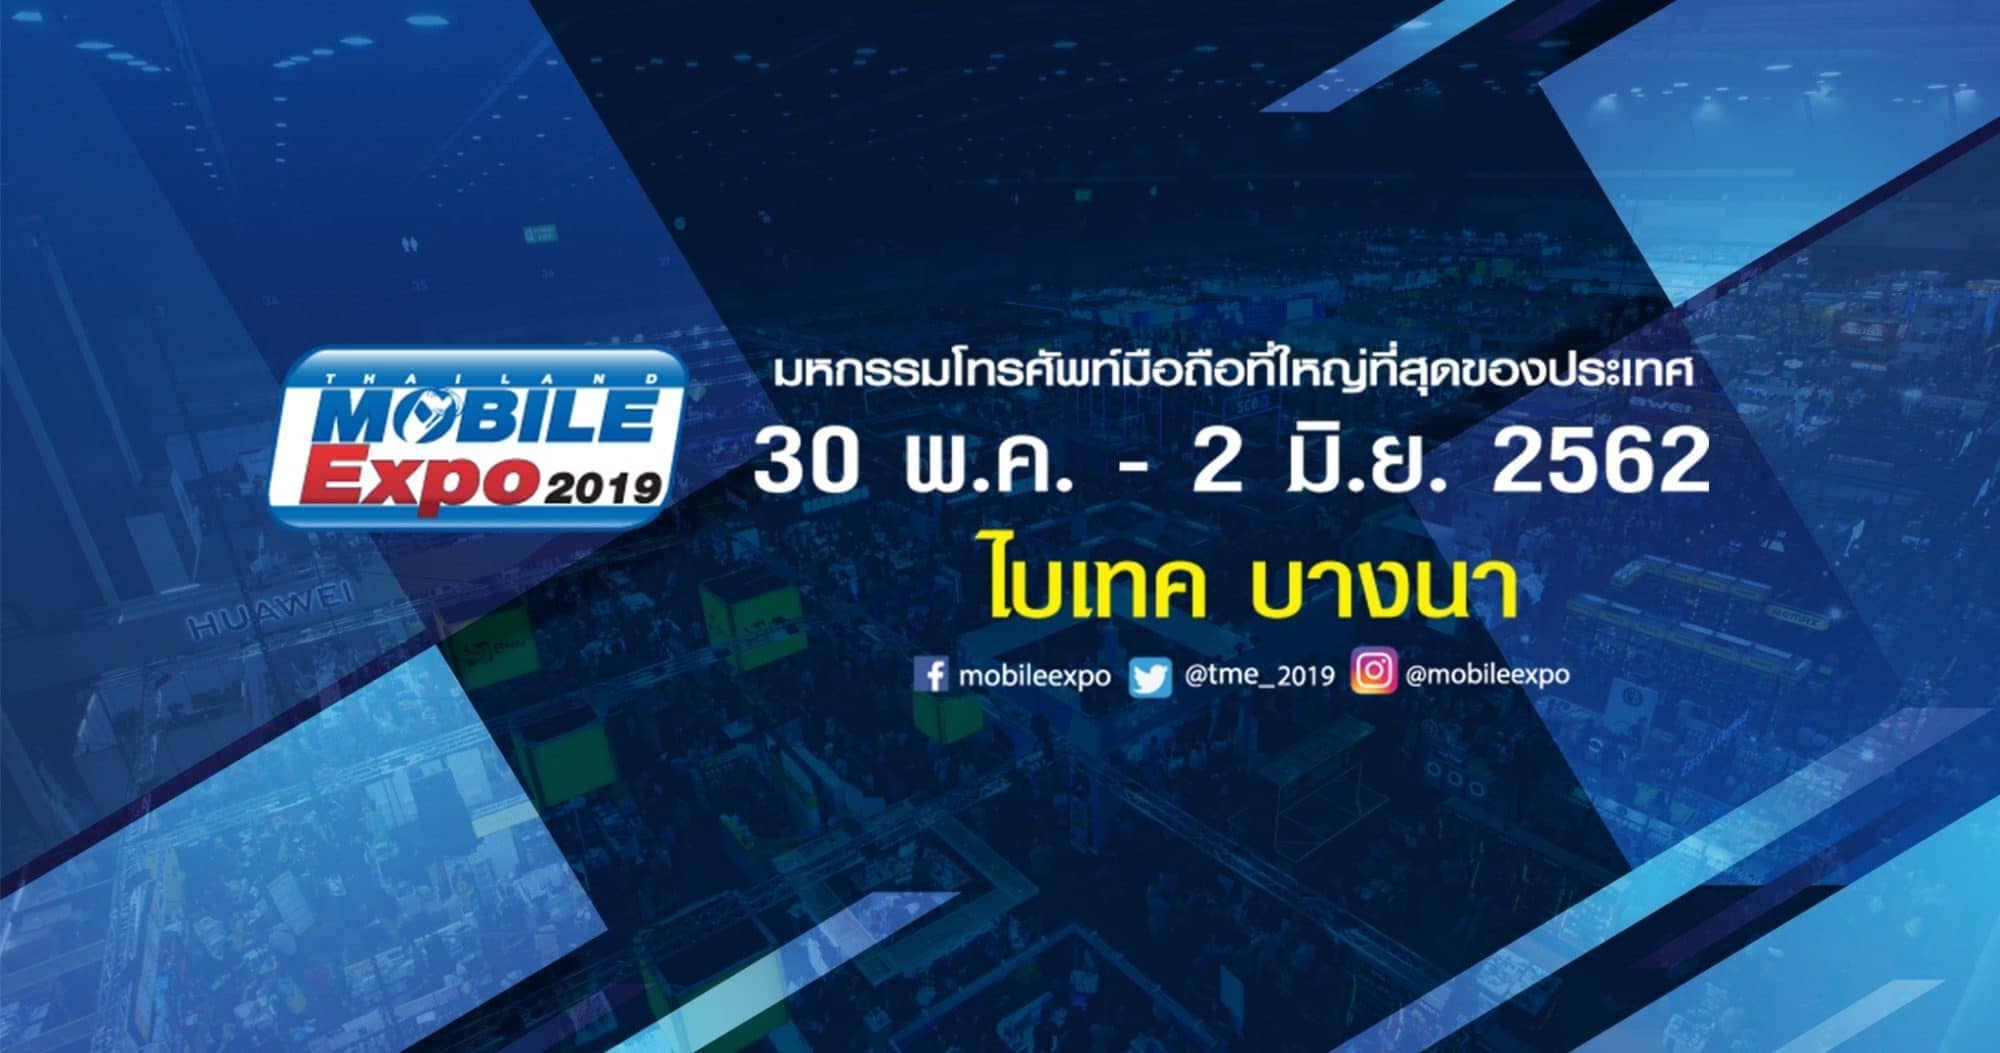 รวมโปรโมชั่น Thailand Mobile Expo 2019 วันที่ 30 พ.ค. - 2 มิ.ย. 2562 1